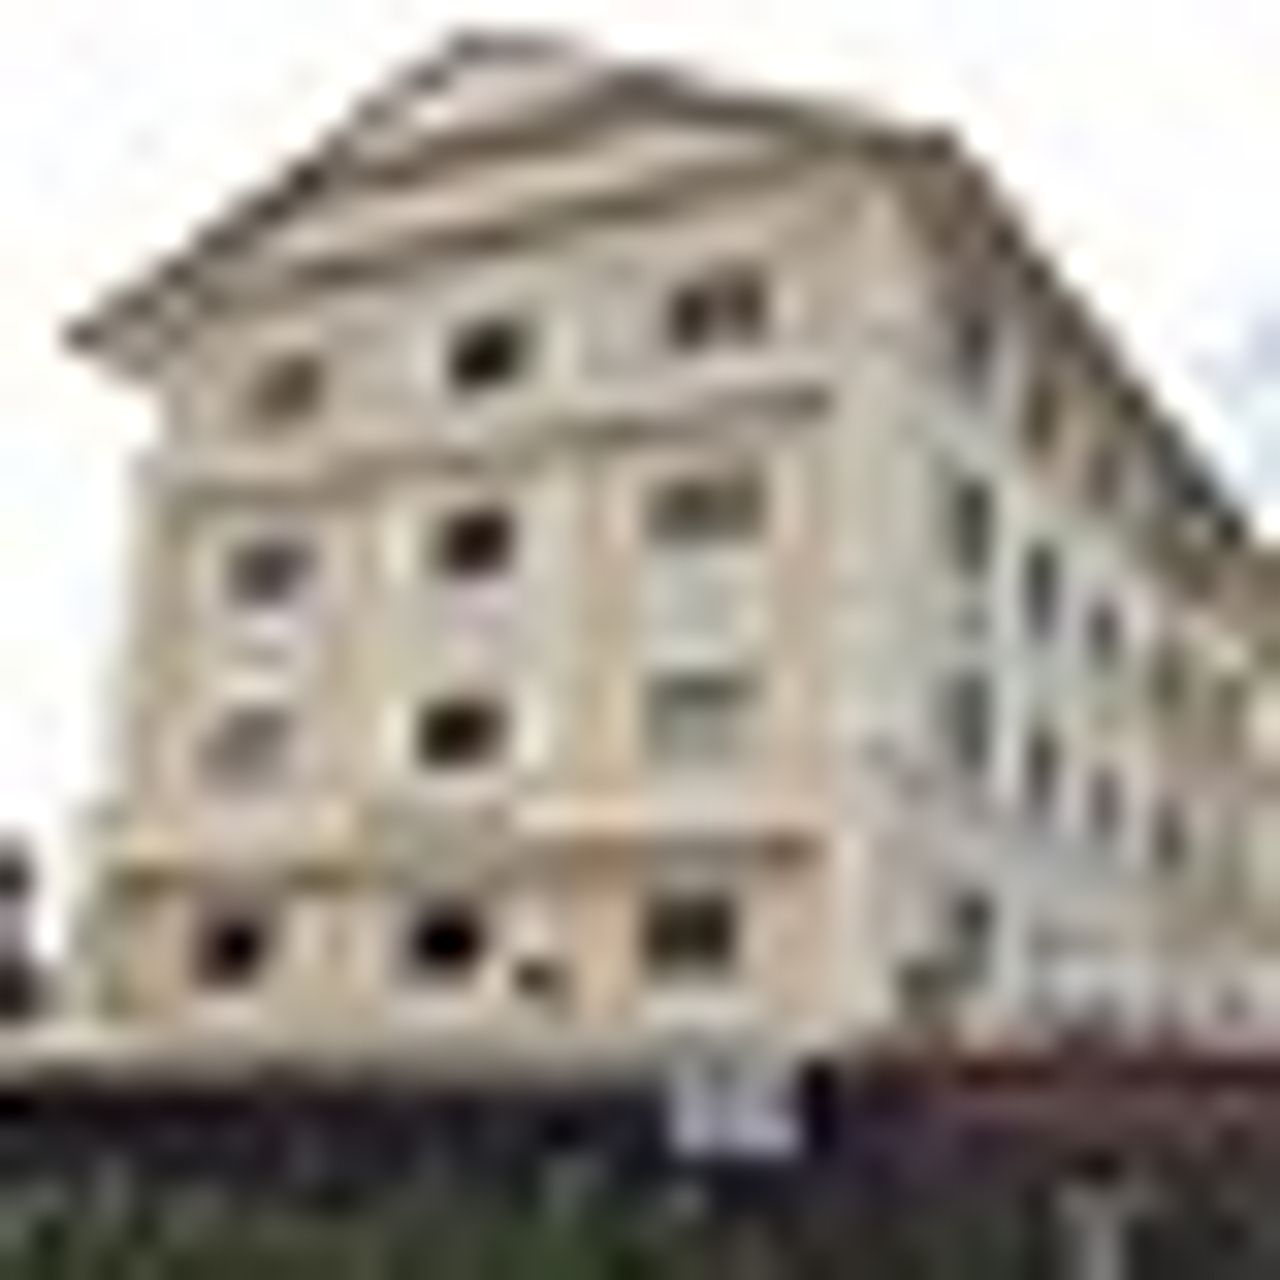 รูปภาพเพิ่มเติม โรงแรมชลพฤกษ์เลคไซด์ - Chonlapruk-Lakeside-หอพักขอนแก่น-ใกล้ม.ภาค-บึงหนองโคตร - ลำดับที่ 3